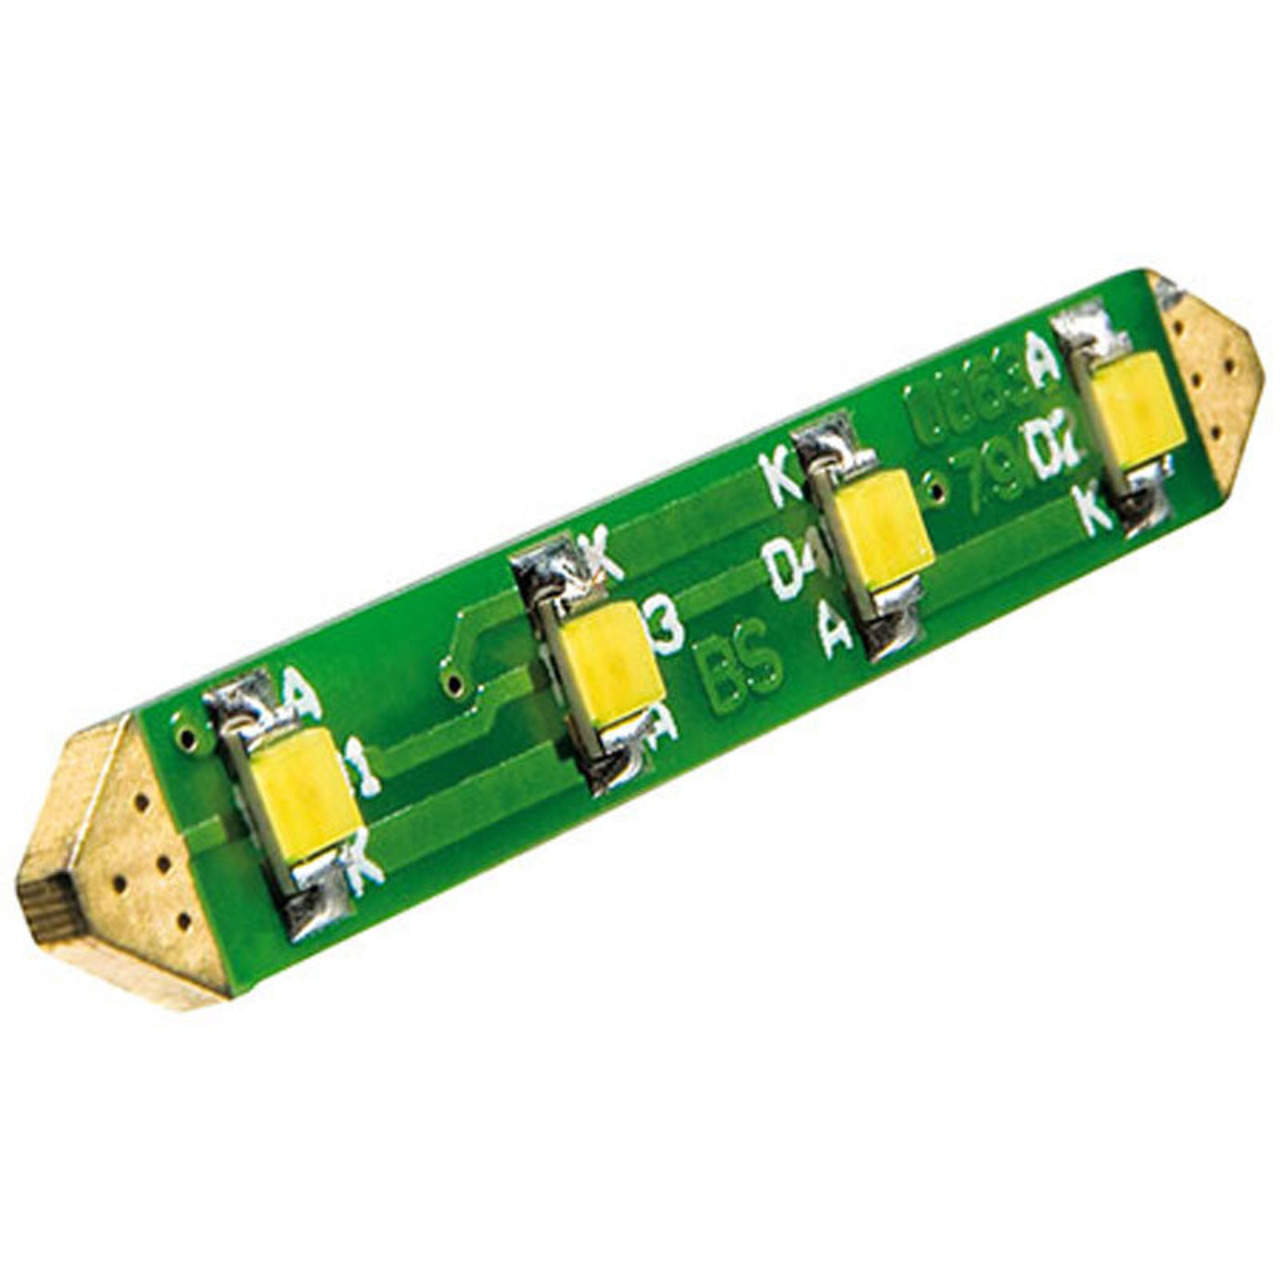 ELV Bausatz LED-Soffitte fr Klingeltaster- ohne LED unter Baustze